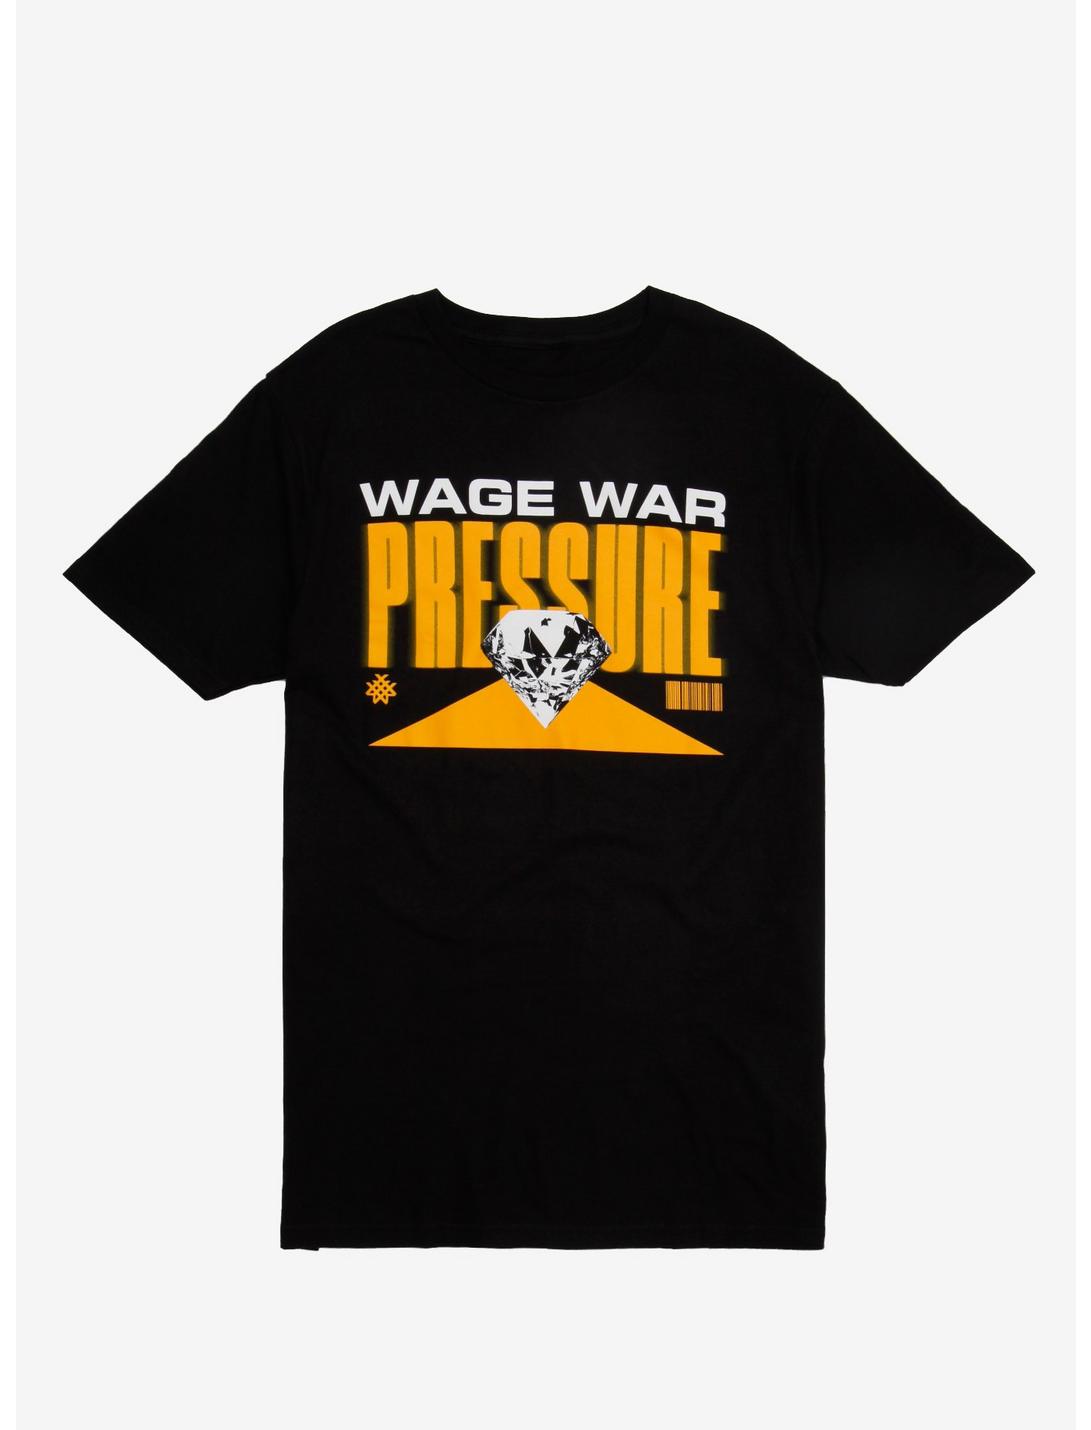 Wage War Pressure Album Art T-Shirt, BLACK, hi-res